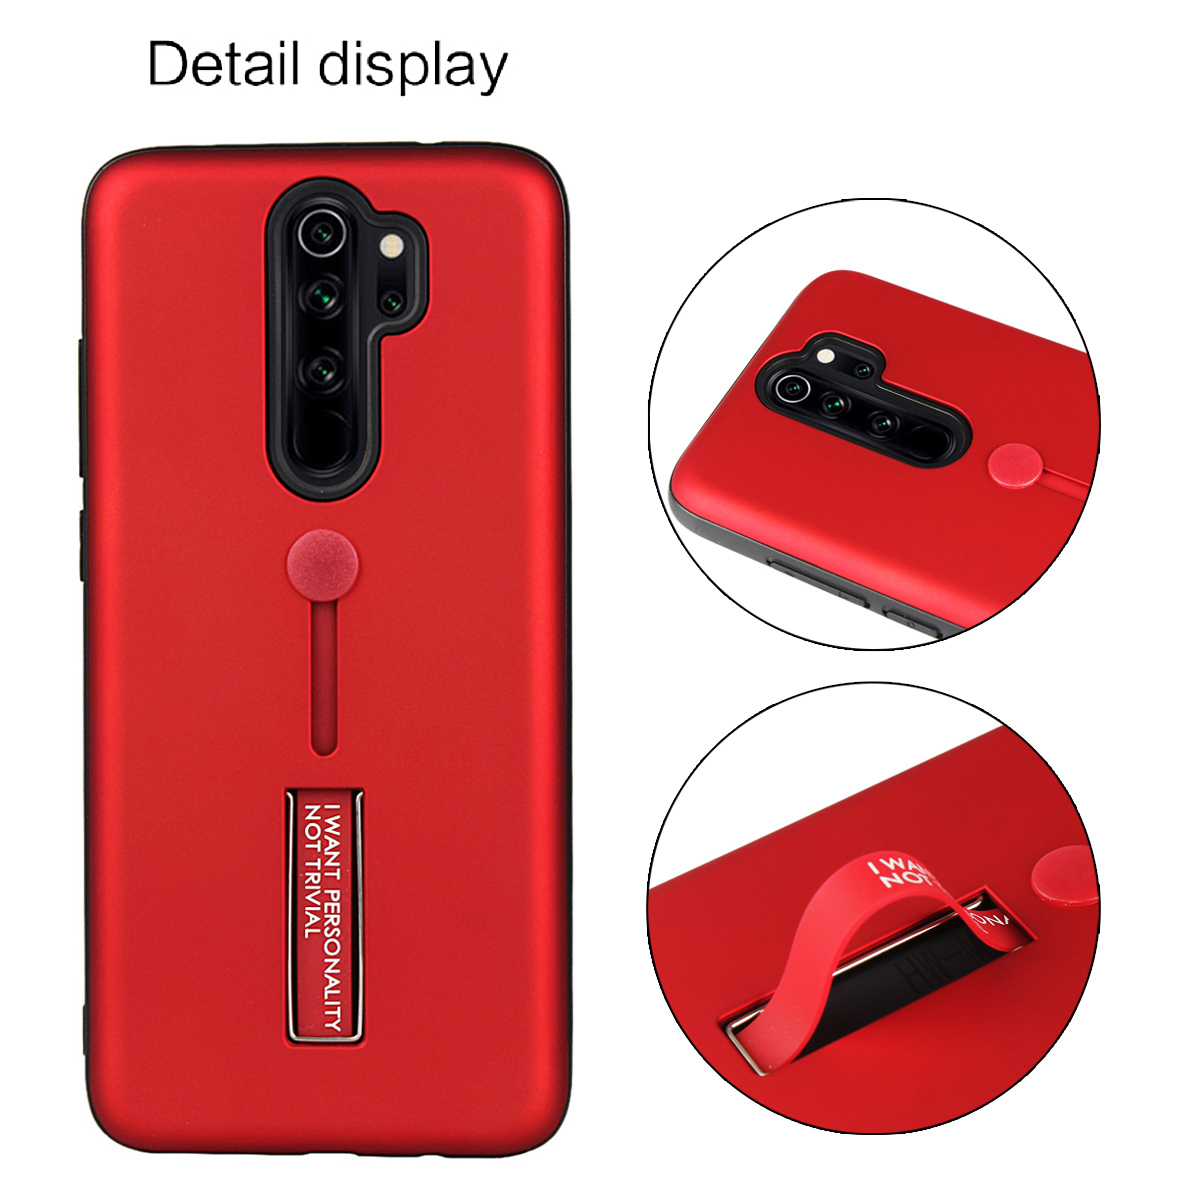 Ốp Lưng Điện Thoại Kiểu Dáng Thời Trang Dành Cho Xiaomi Redmi Note 8pro